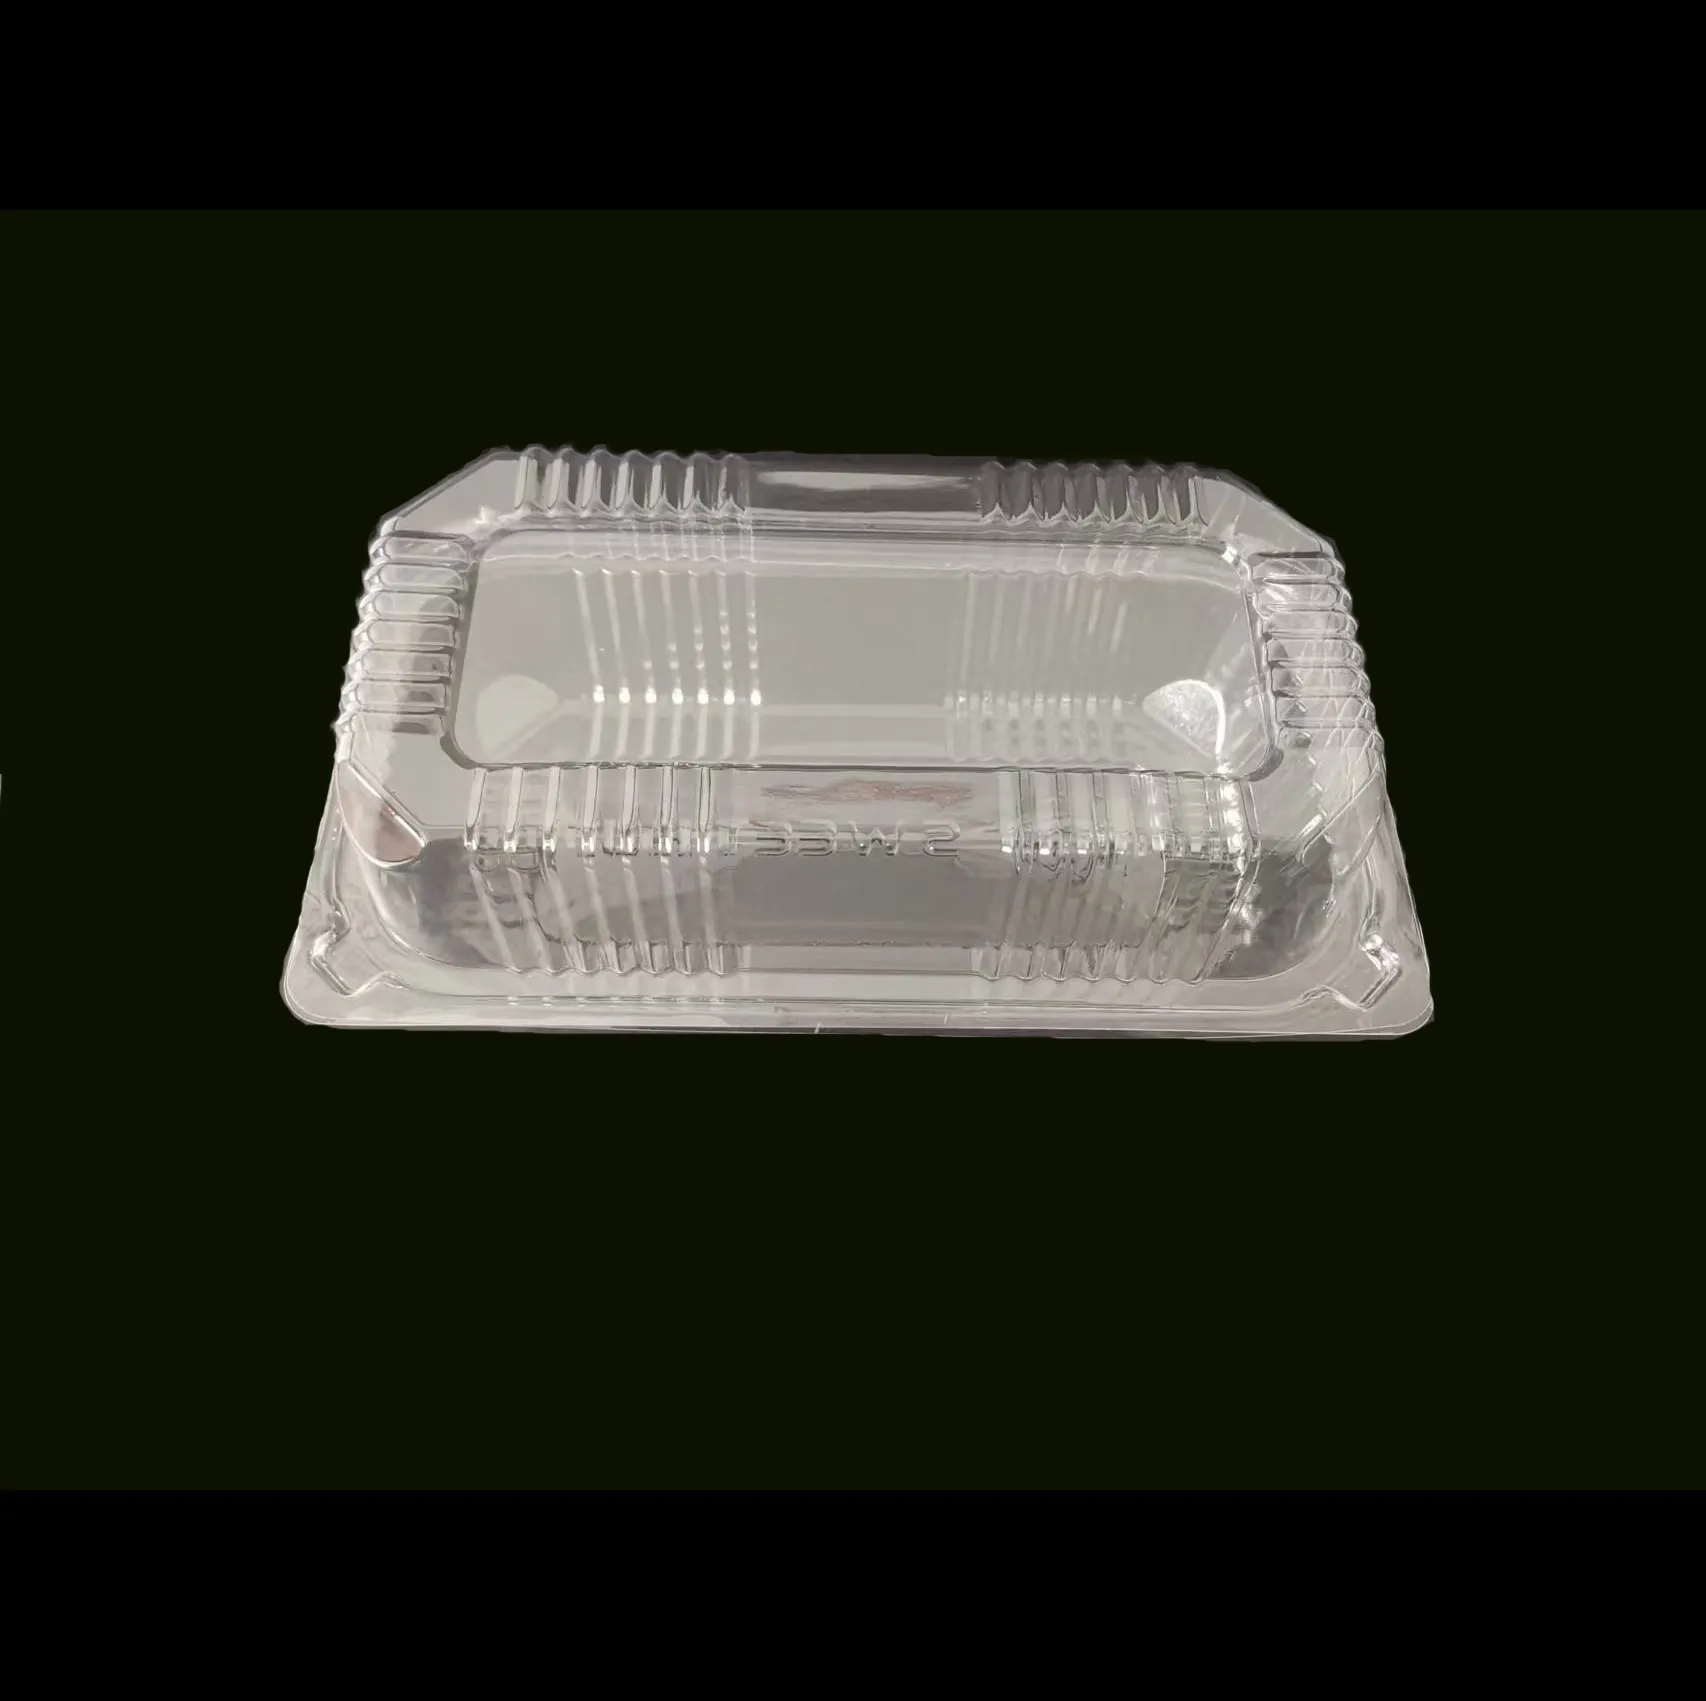 Klarer einweg-plastikbehälter mit scharnierdeckel 9 x 5 groß für brot tiefe plätzchen einweg-klappbehälter für lebensmittel